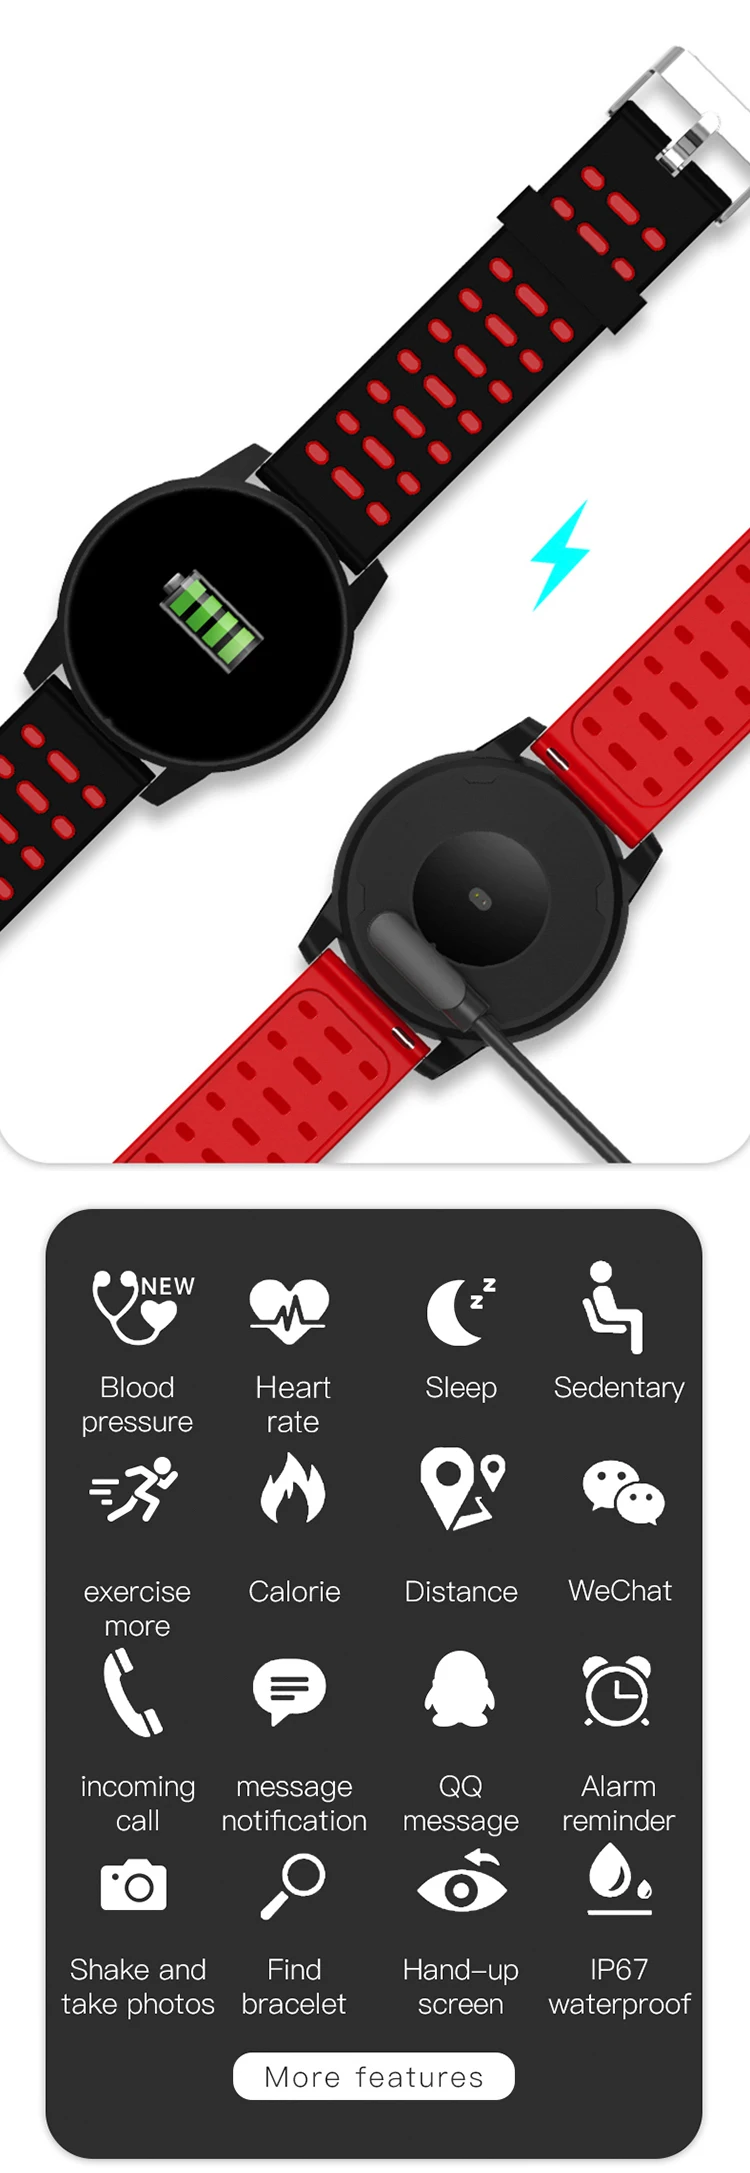 Новые цифровые часы мужские часы спортивные цифровые электронные наручные часы для мужчин часы мужские наручные часы подарки Relogio Masculino